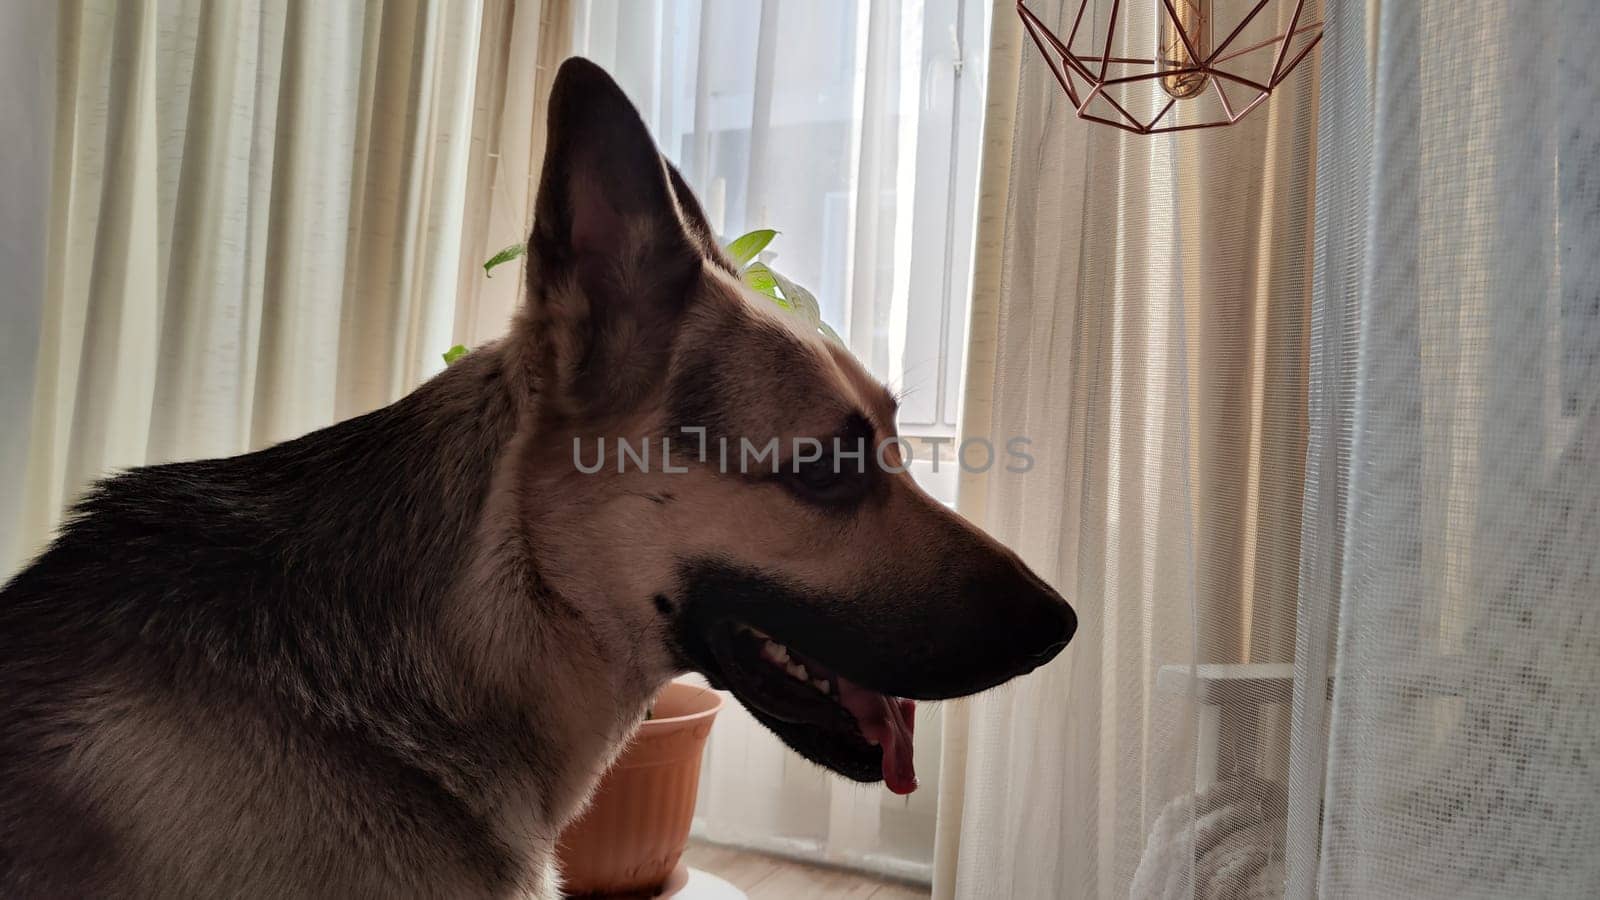 Dog German Shepherd inside of room. Russian eastern European dog veo indoors